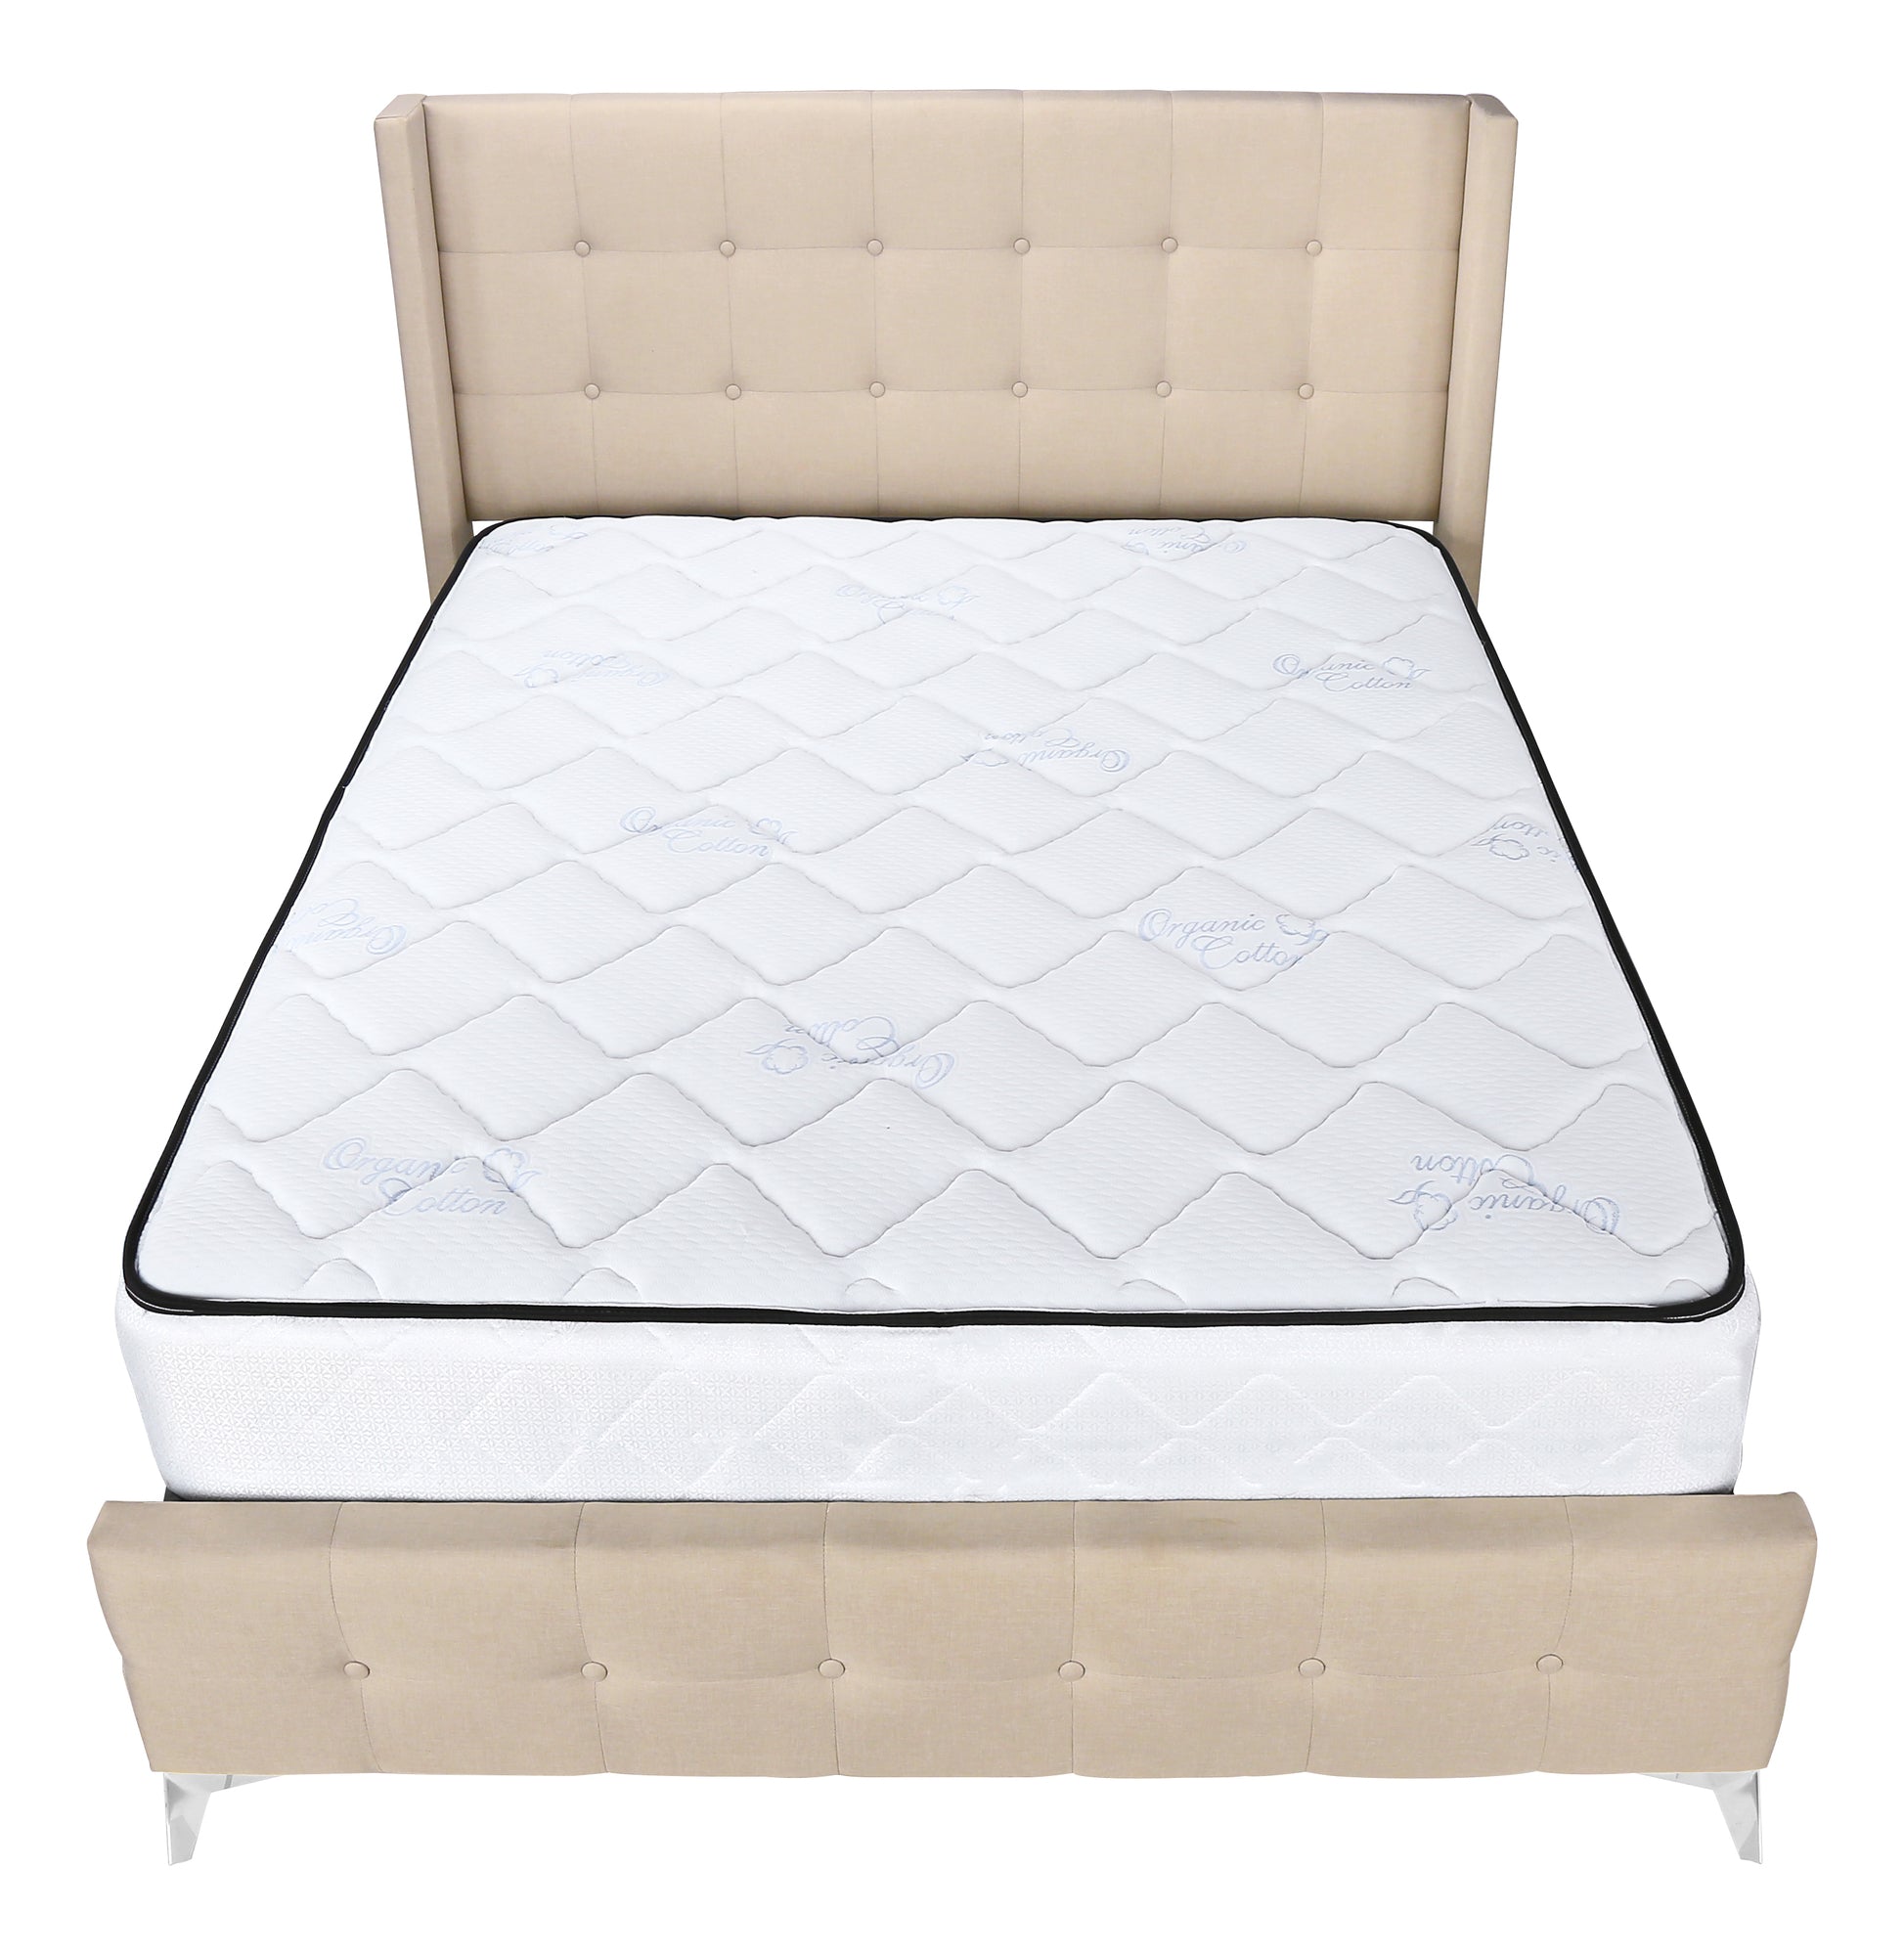 MN-926041Q    Bed, Queen Size, Bedroom, Upholstered, Beige Linen Look, Chrome Metal Legs